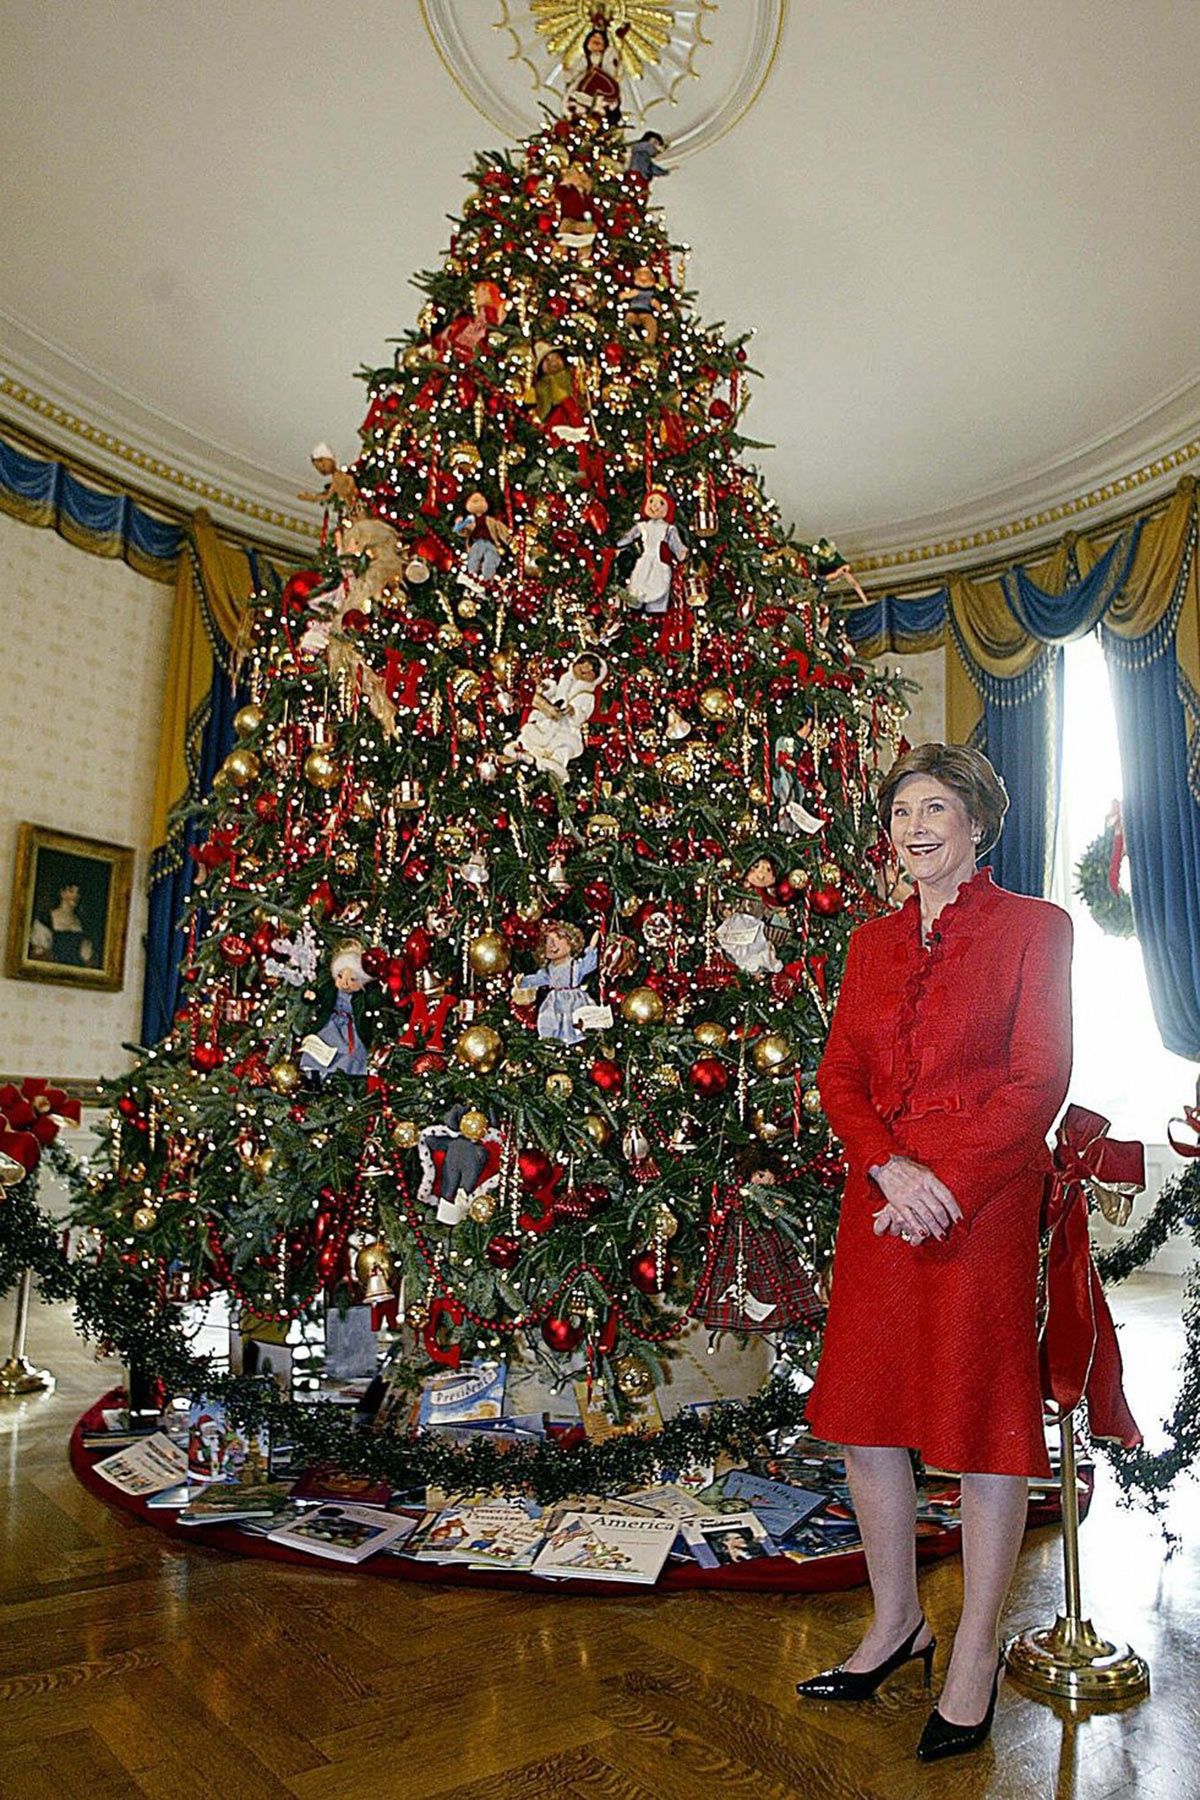 あなたの生まれた年に飾られたホワイトハウスのクリスマスツリーは